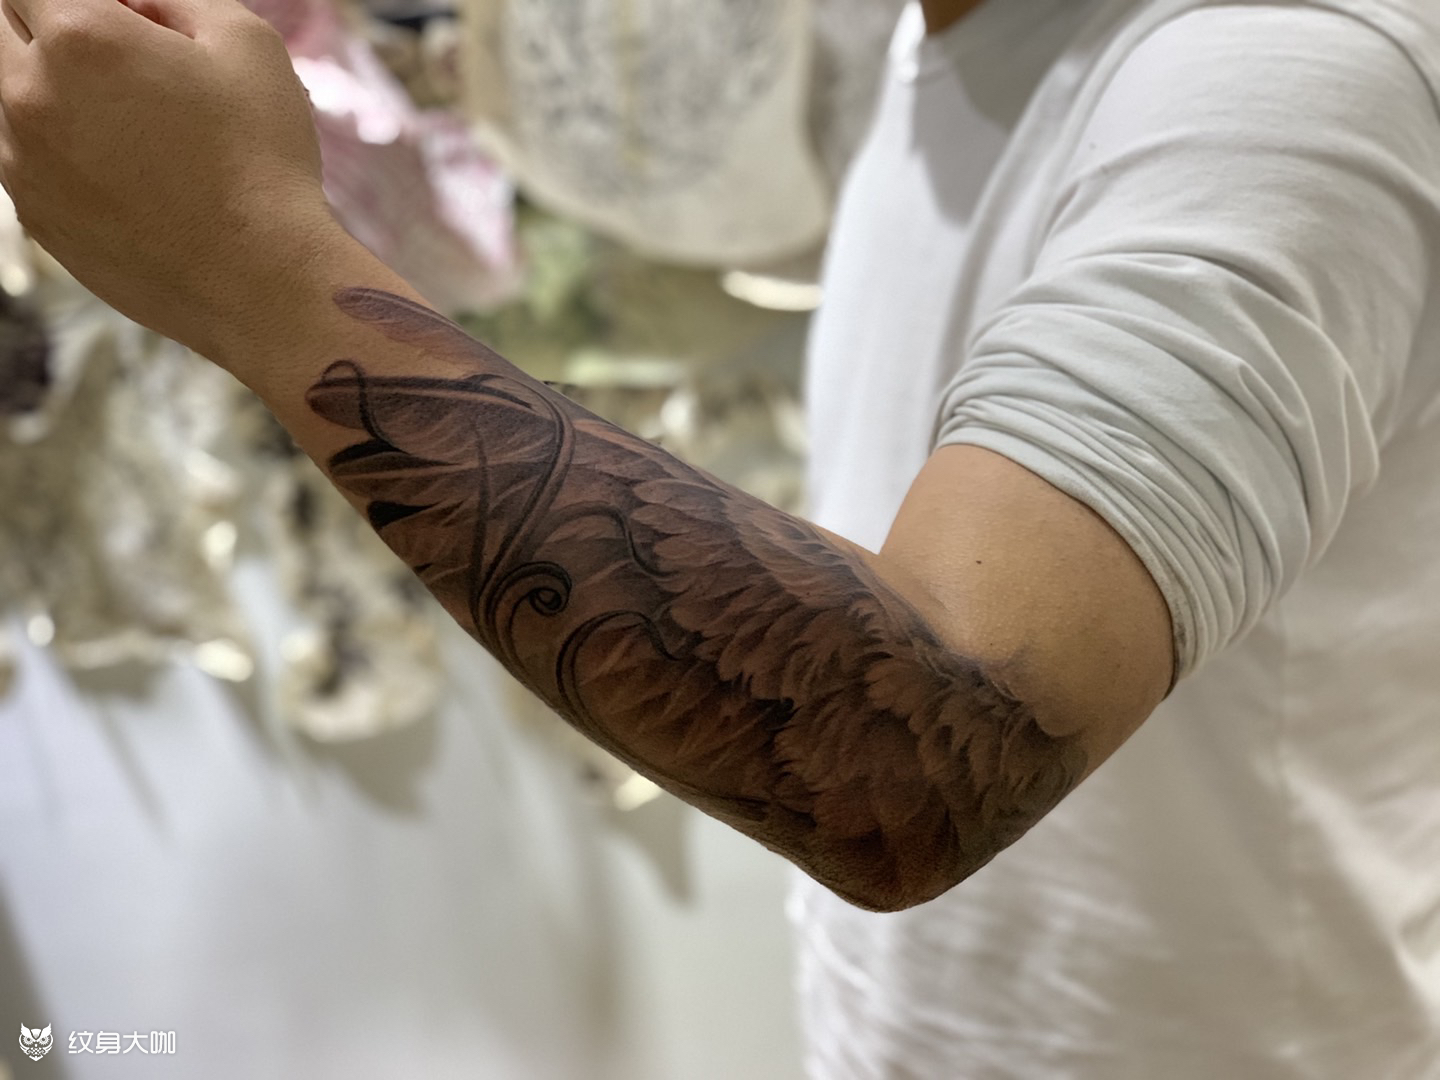 今日作品更新#小臂翅膀#_纹身图案手稿图片_刘鑫的纹身作品集